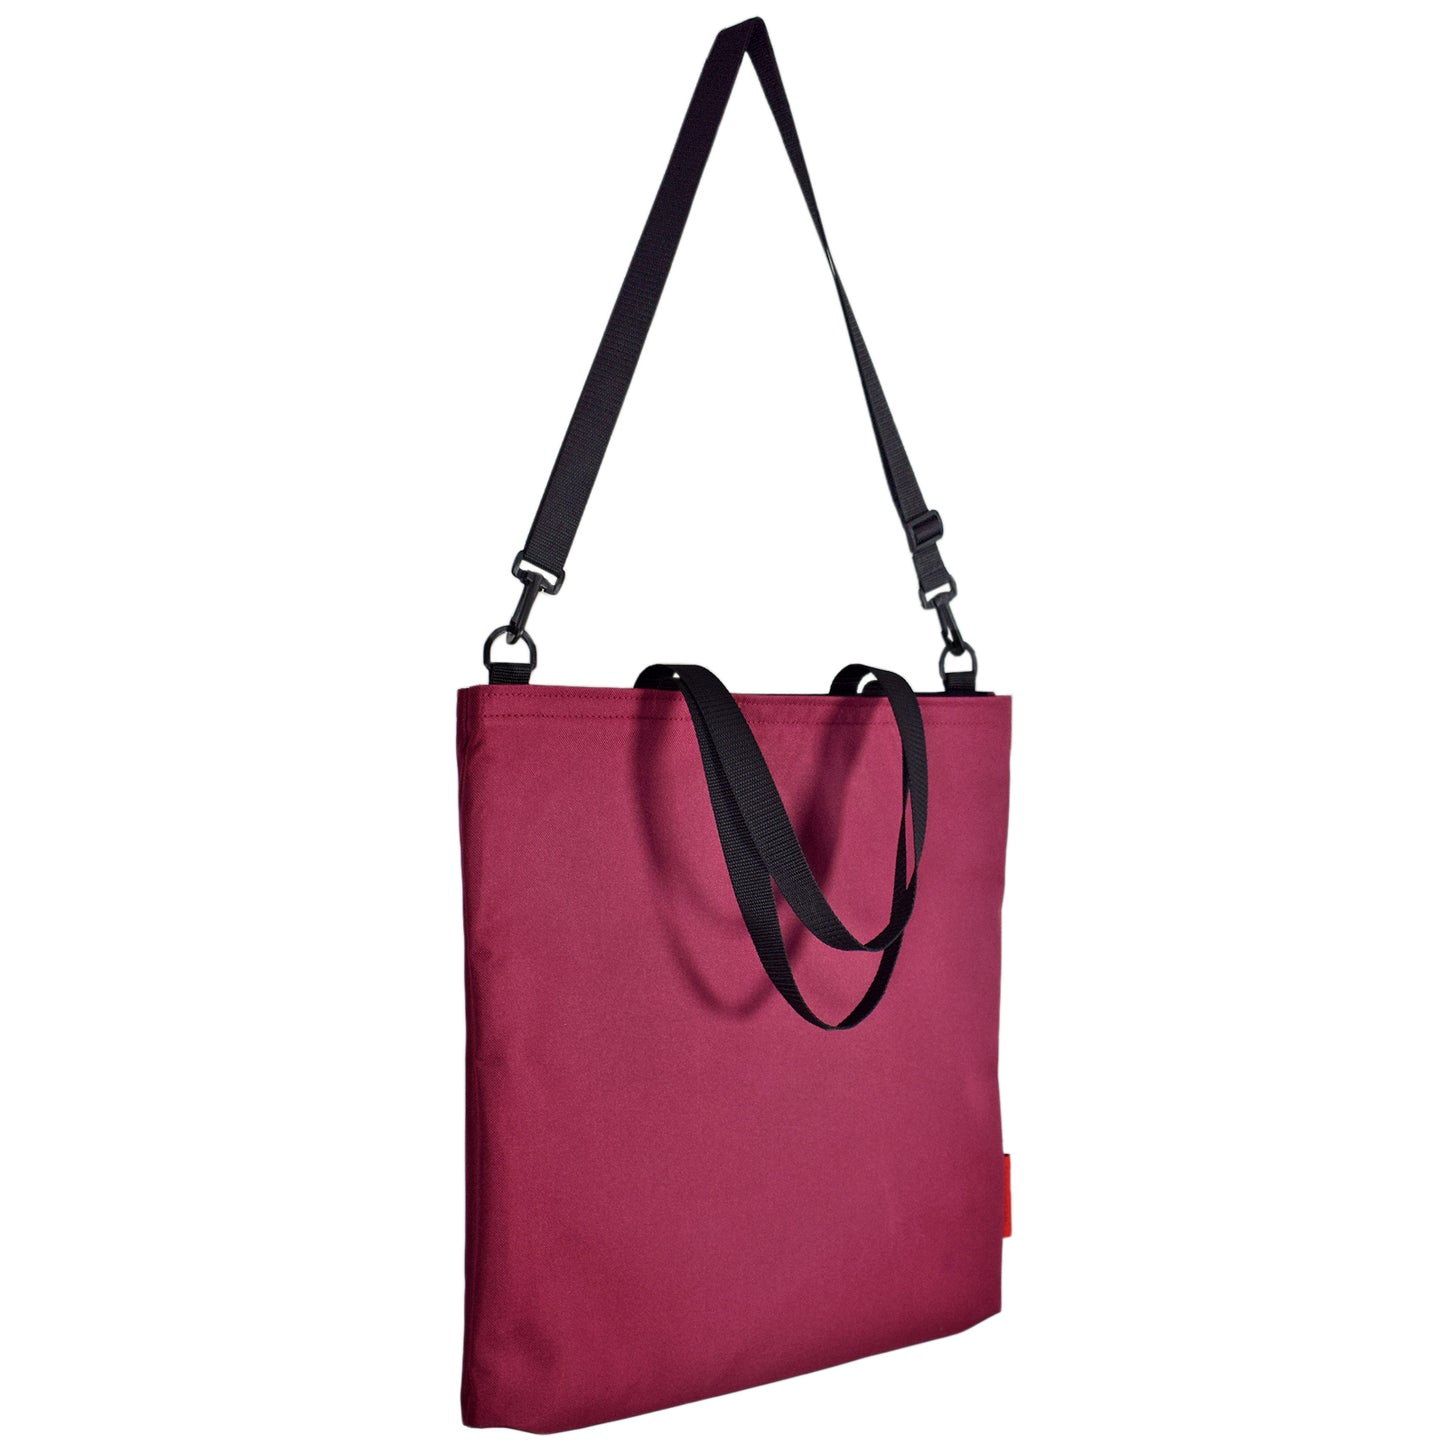 Goodstart Jones tote bag with detachable adjustable shoulder straps 